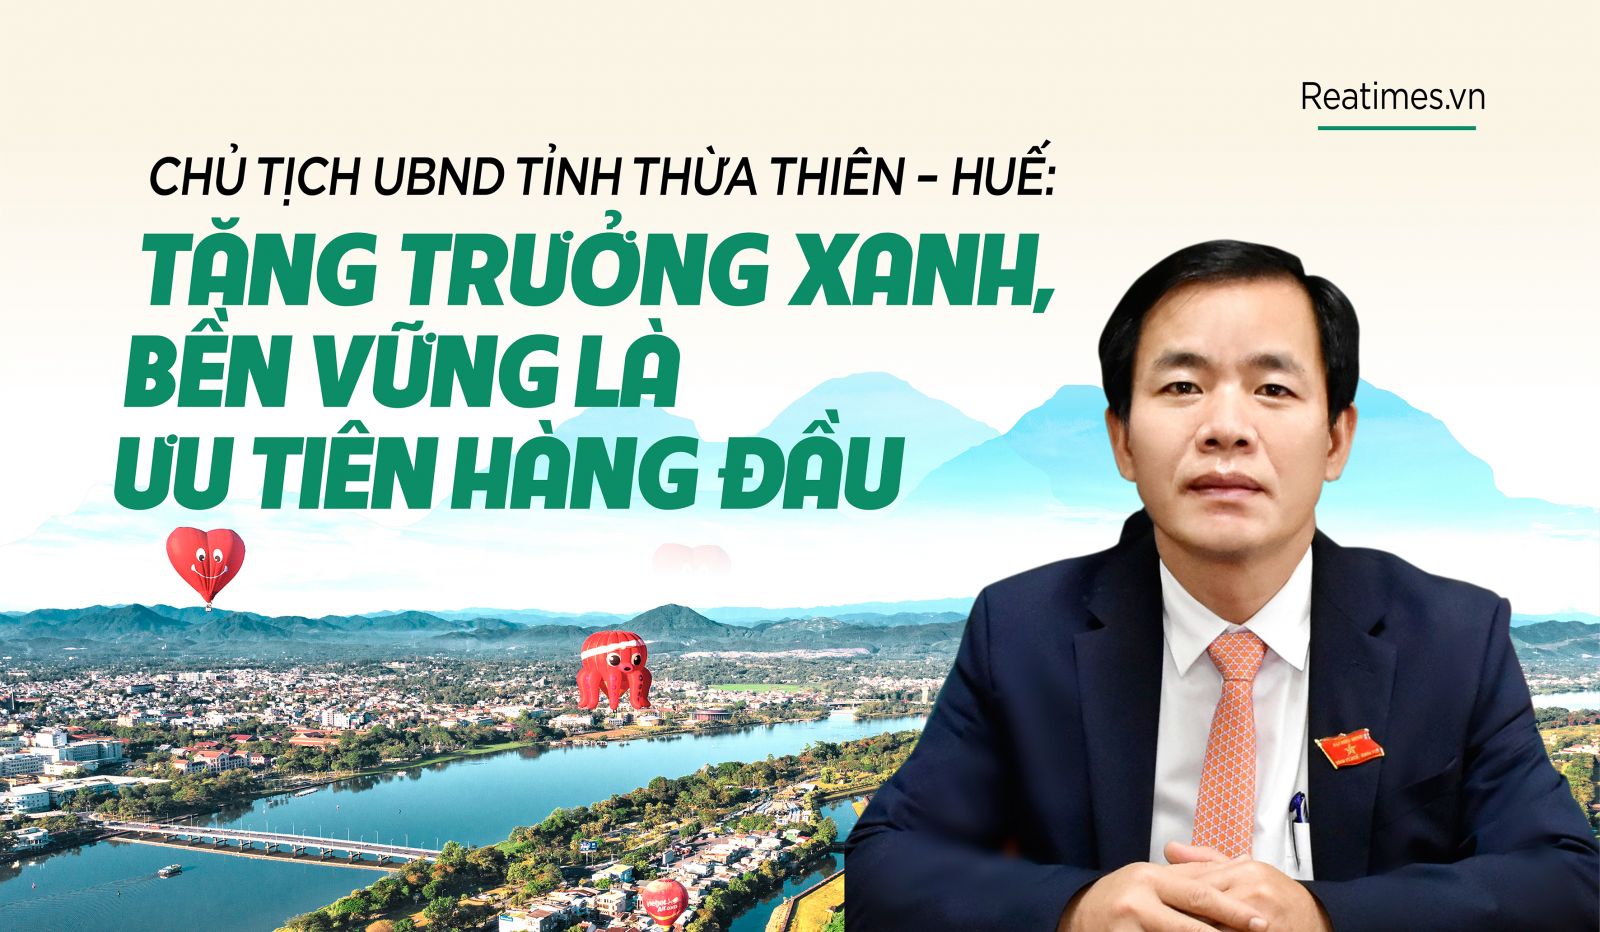 Chủ tịch UBND tỉnh Thừa Thiên - Huế: Tăng trưởng xanh, bền vững là ưu tiên hàng đầu